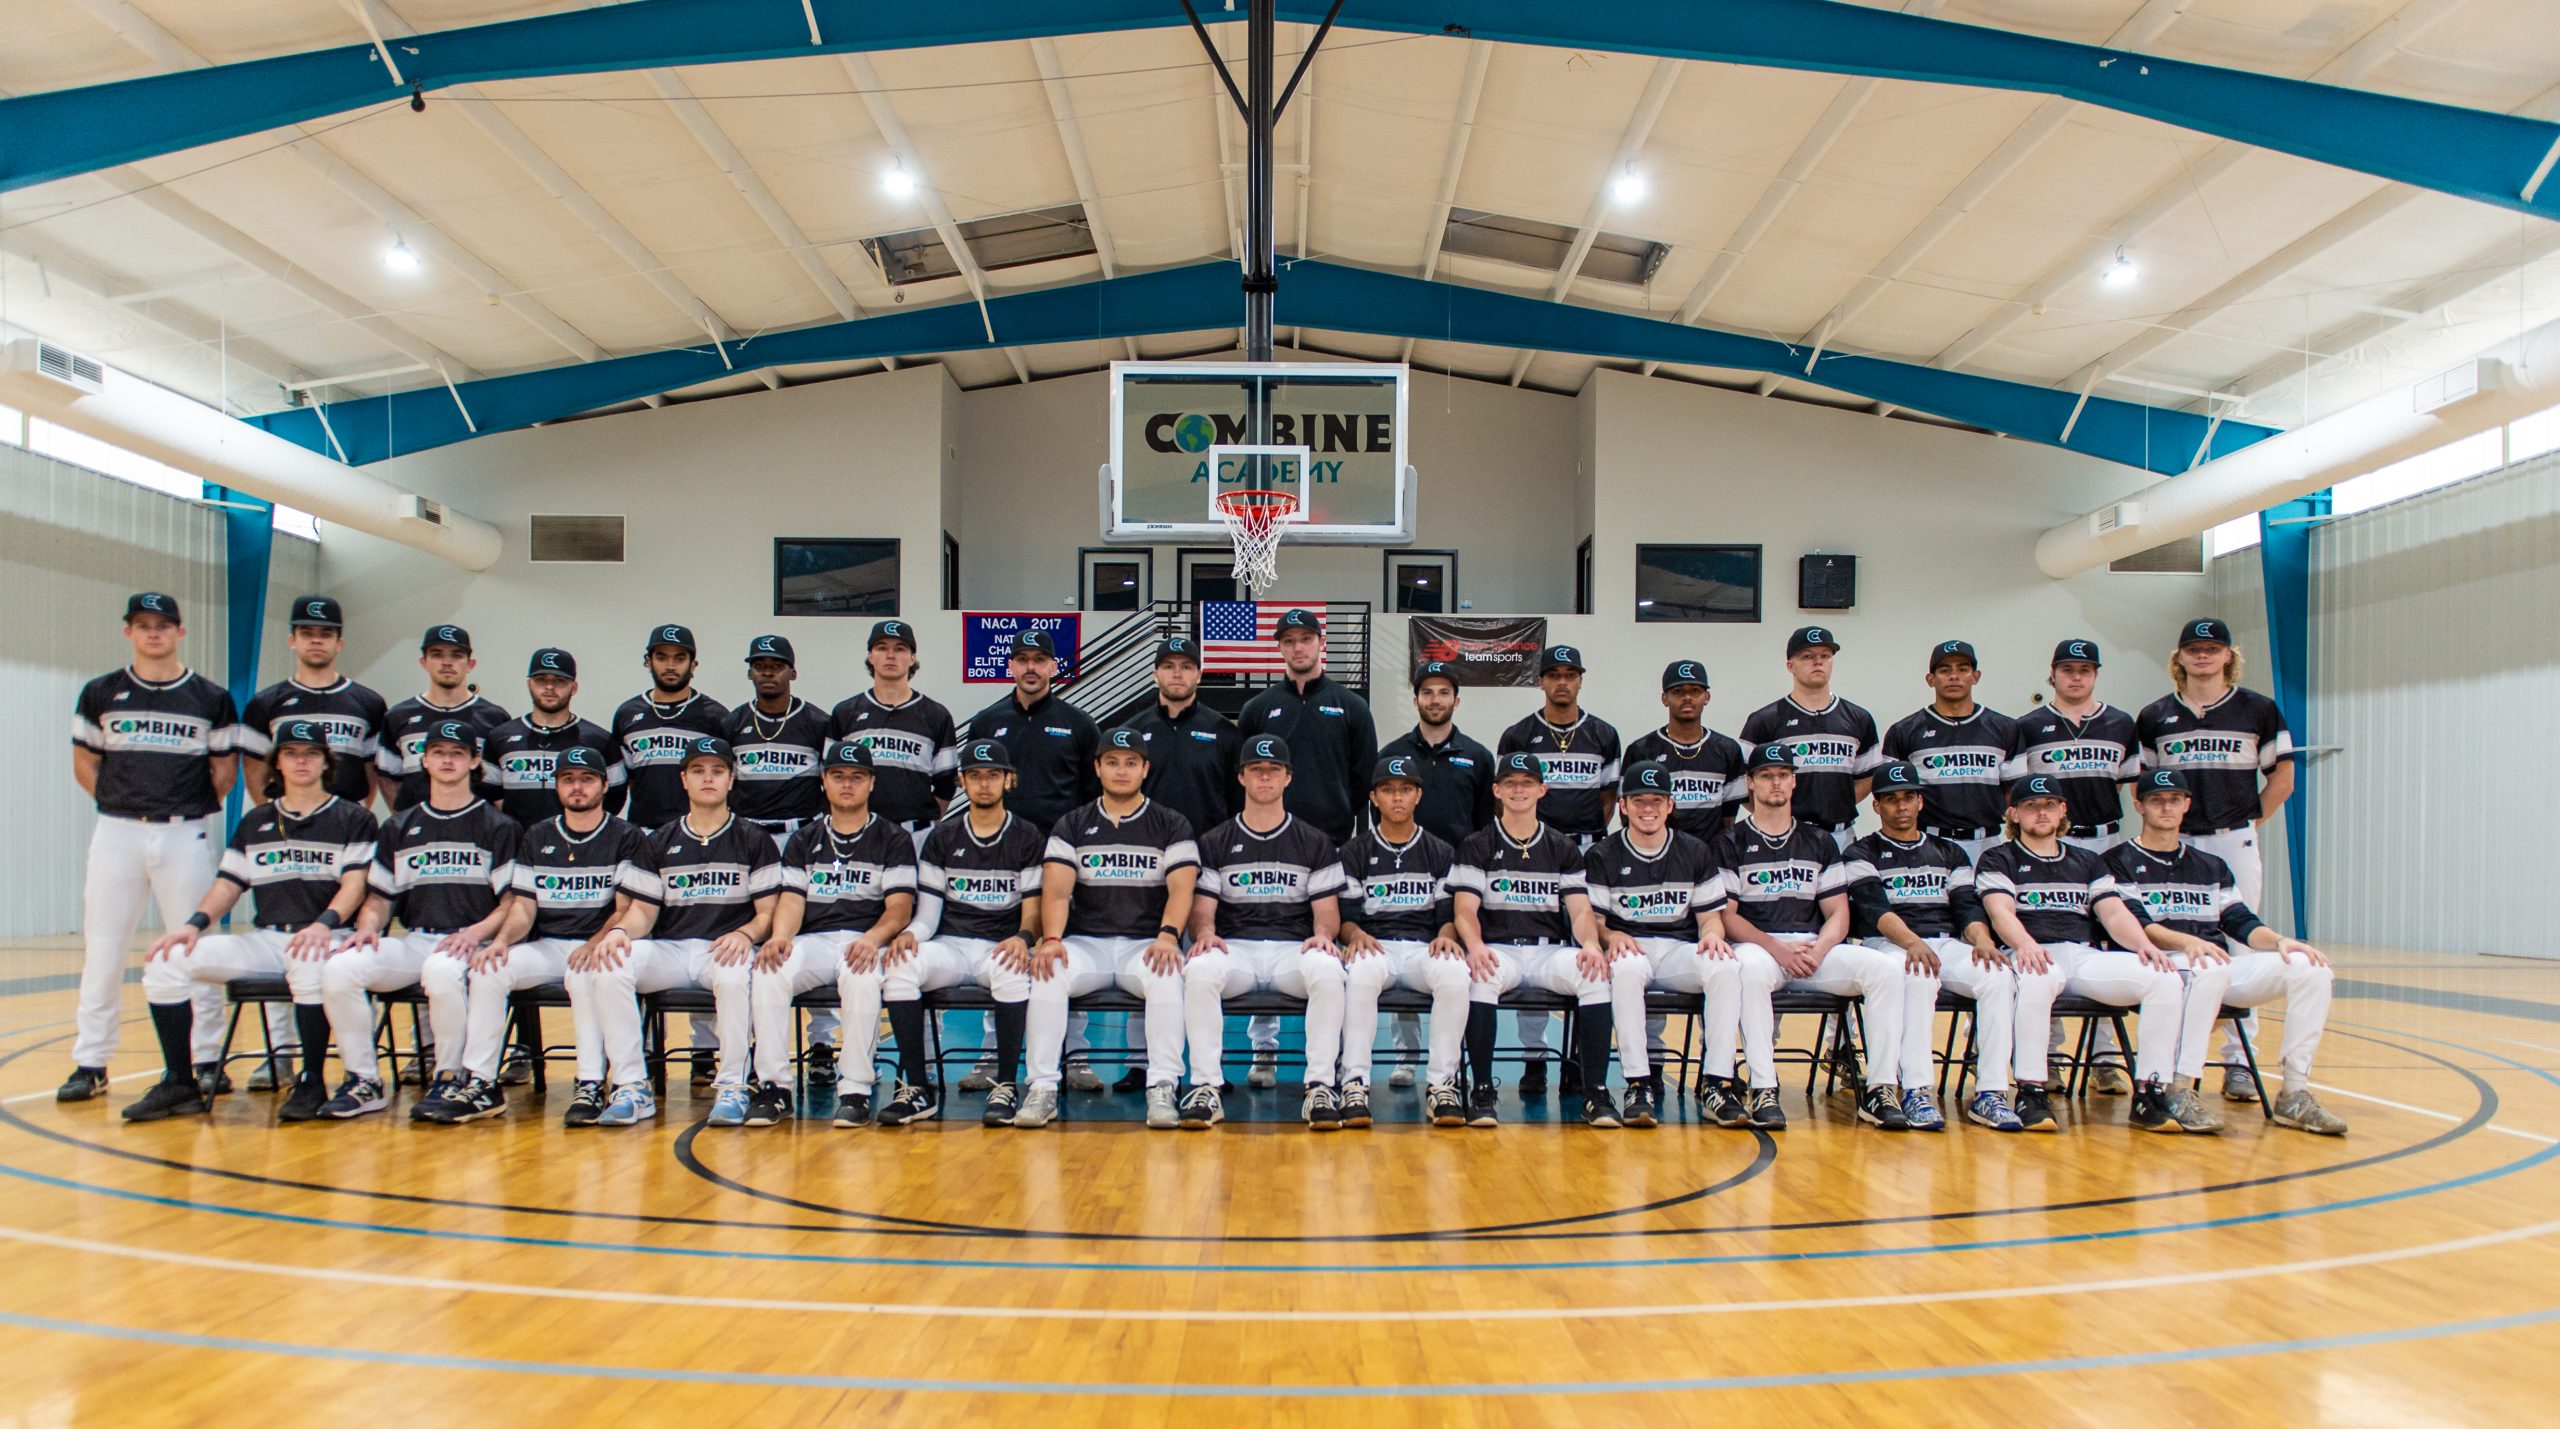 Combine Academy Baseball Group